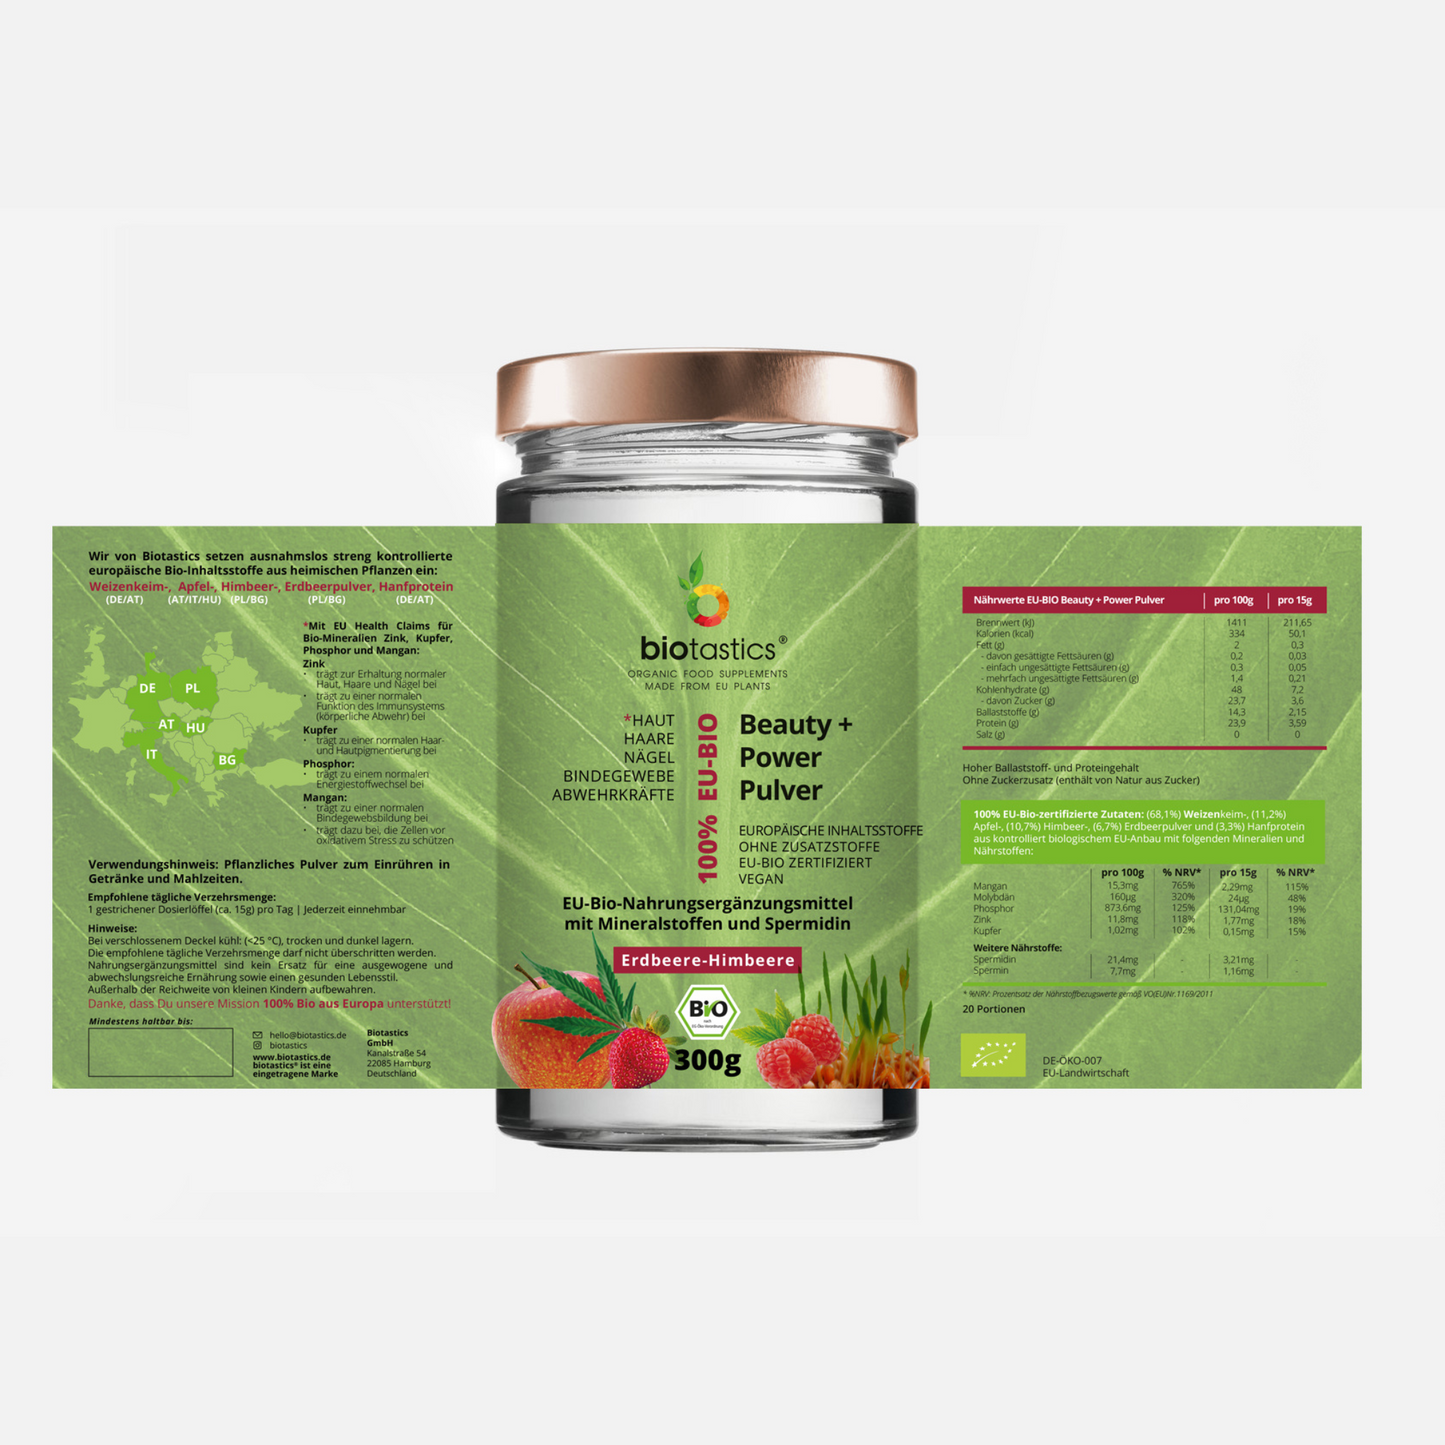 Bio Spermidin plus  Superfood-Mineralstoffe-Beauty+Power Pulver_Etikett_von Biotastics Bio Nahrungsergaenzung